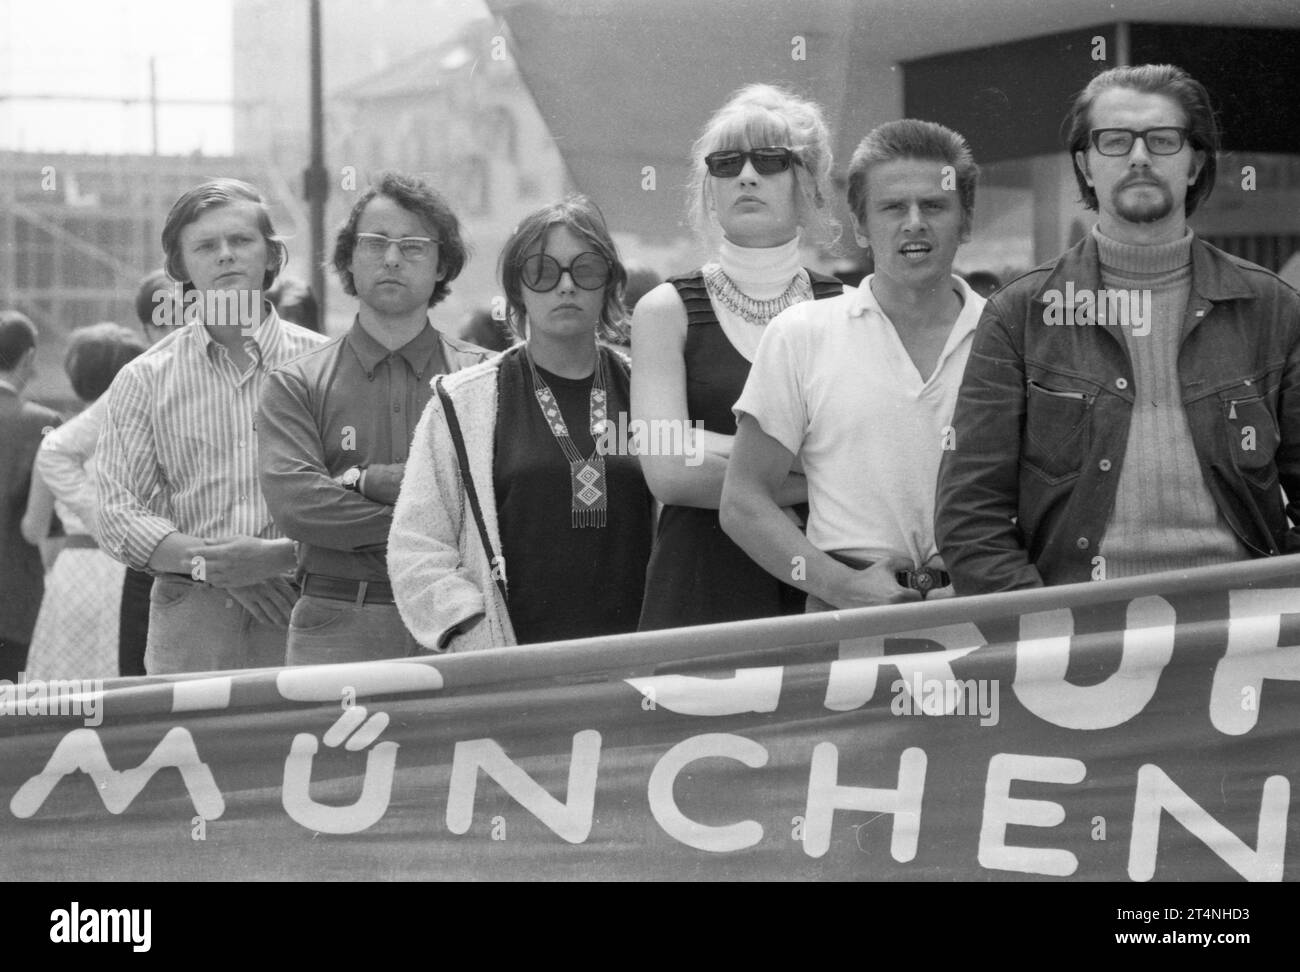 DEU, Germania: Le foto storiche a colori dei tempi degli anni '70 mostrano eventi e persone di politica, cultura, sindacati, vita lavorativa Foto Stock